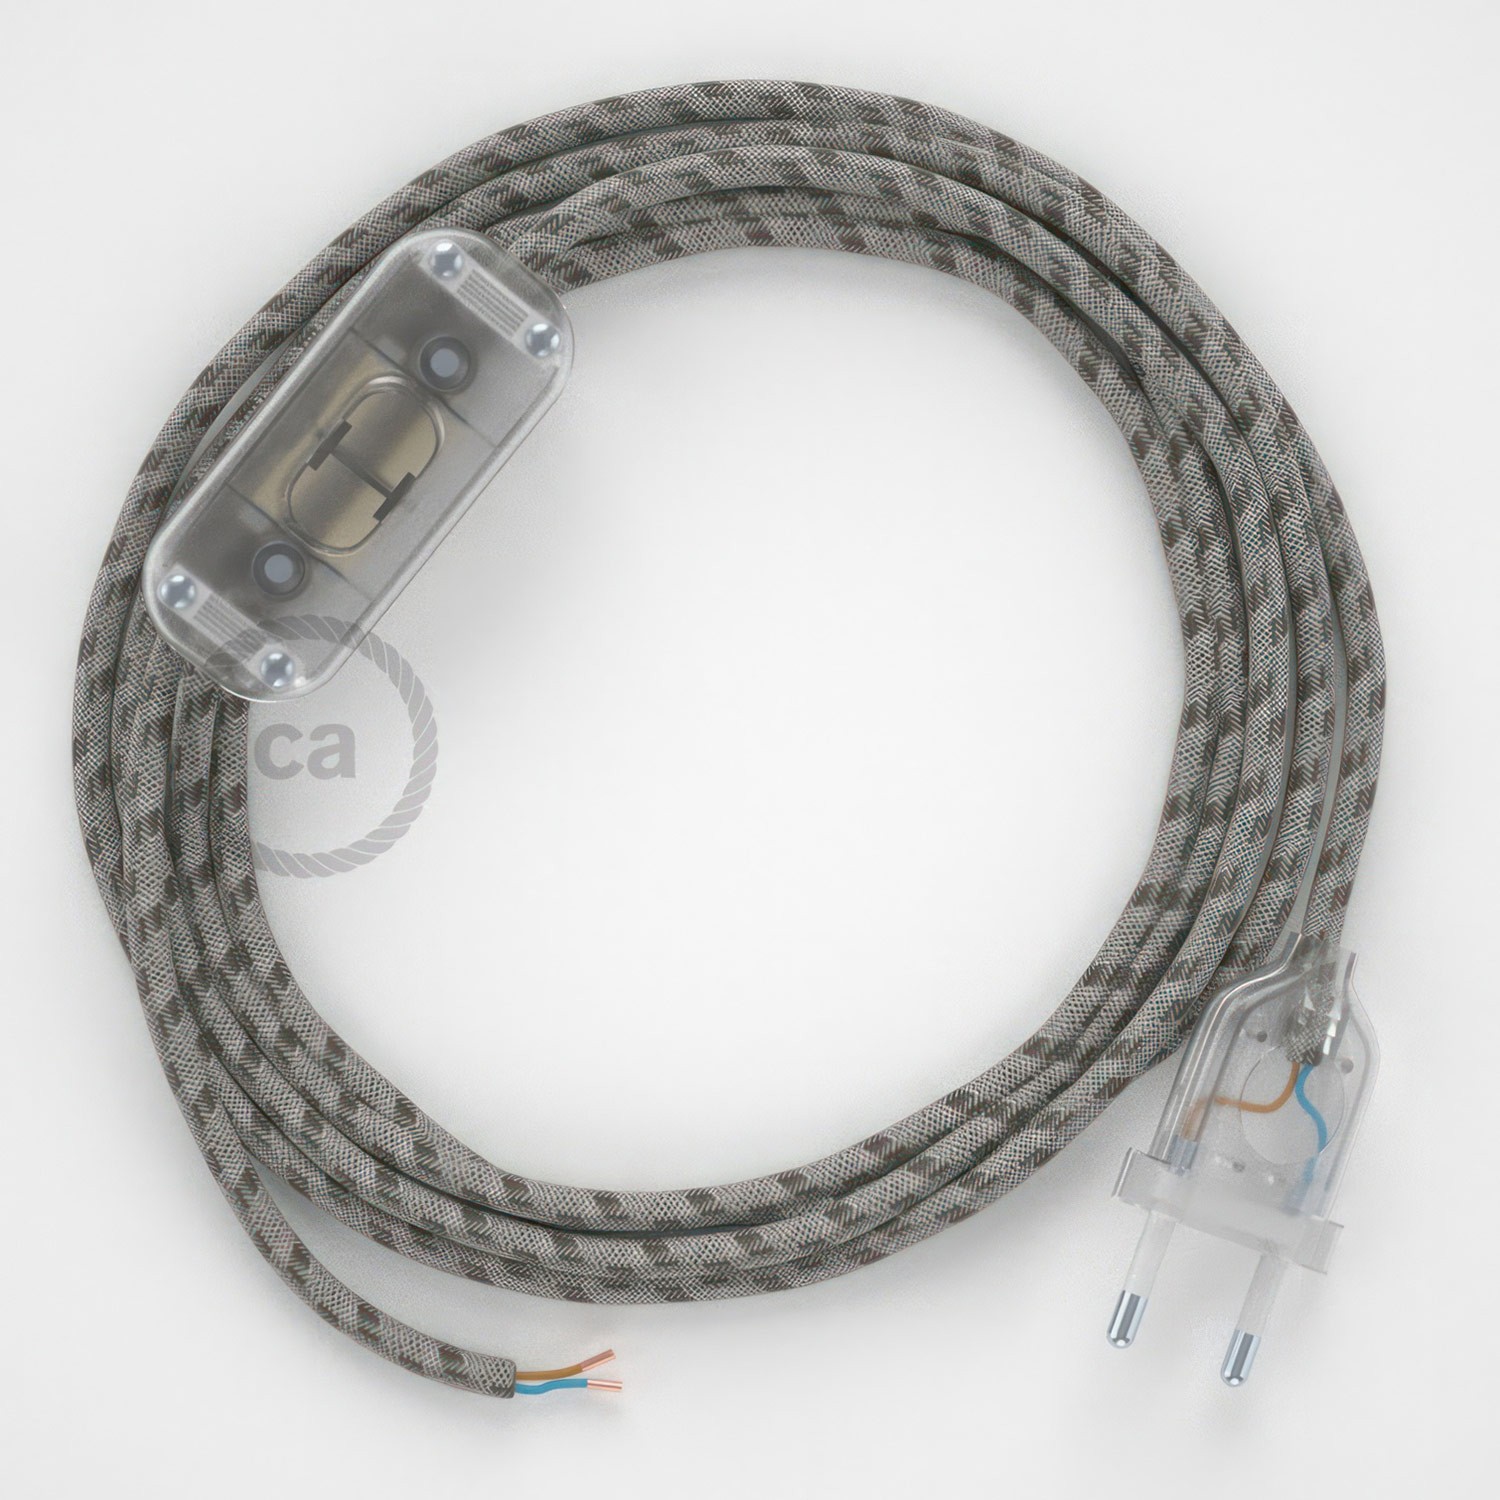 Cableado para lámpara, cable RD53 Algodón y Lino Stripes Corteza 1,8m. Elige tu el color de la clavija y del interruptor!